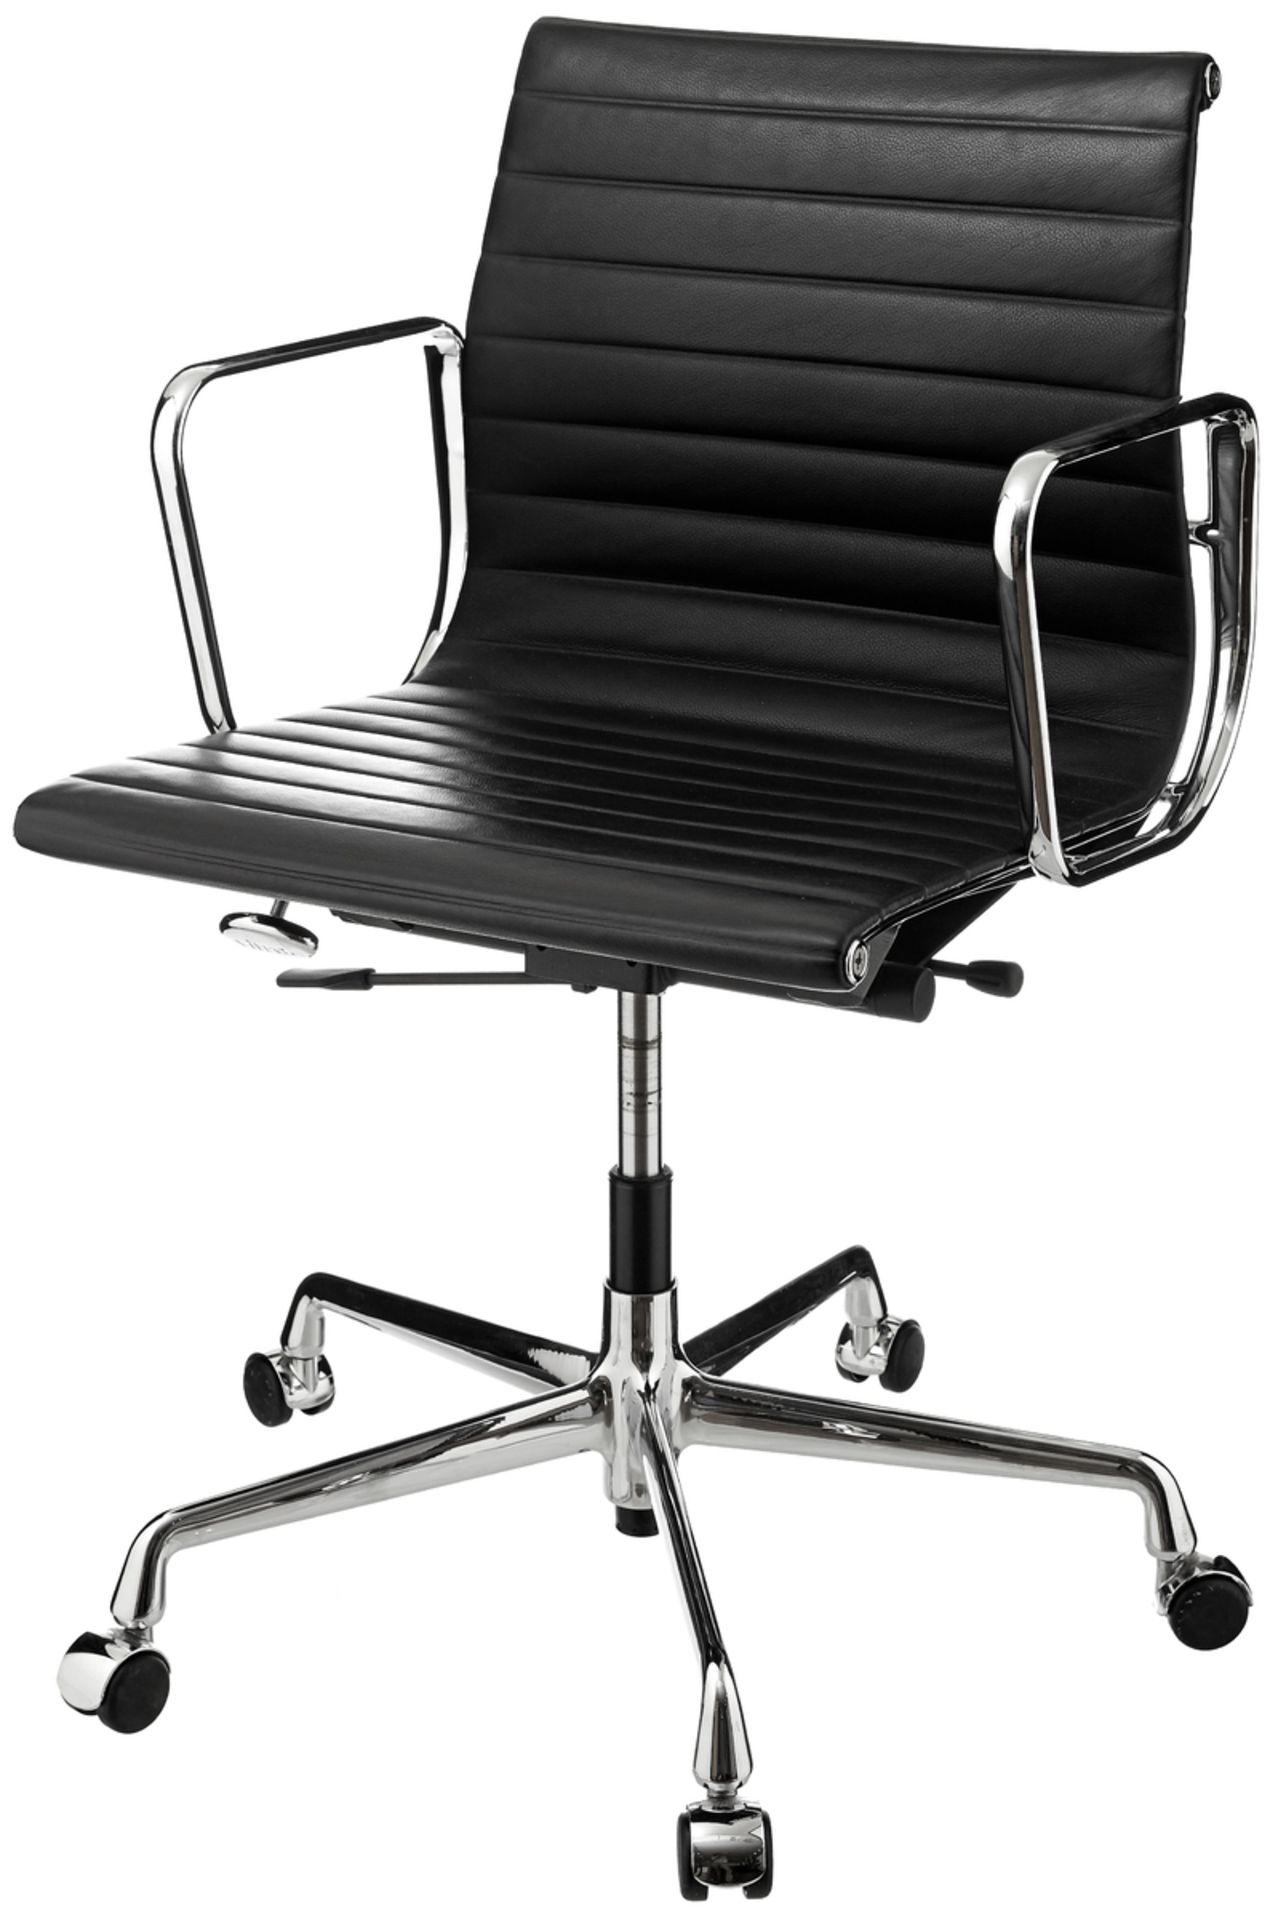 Paar Bürostühle "EA117"Entwurf 1958 Charles & Ray Eames für Herman Miller. Drehbares, poliertes - Bild 3 aus 5